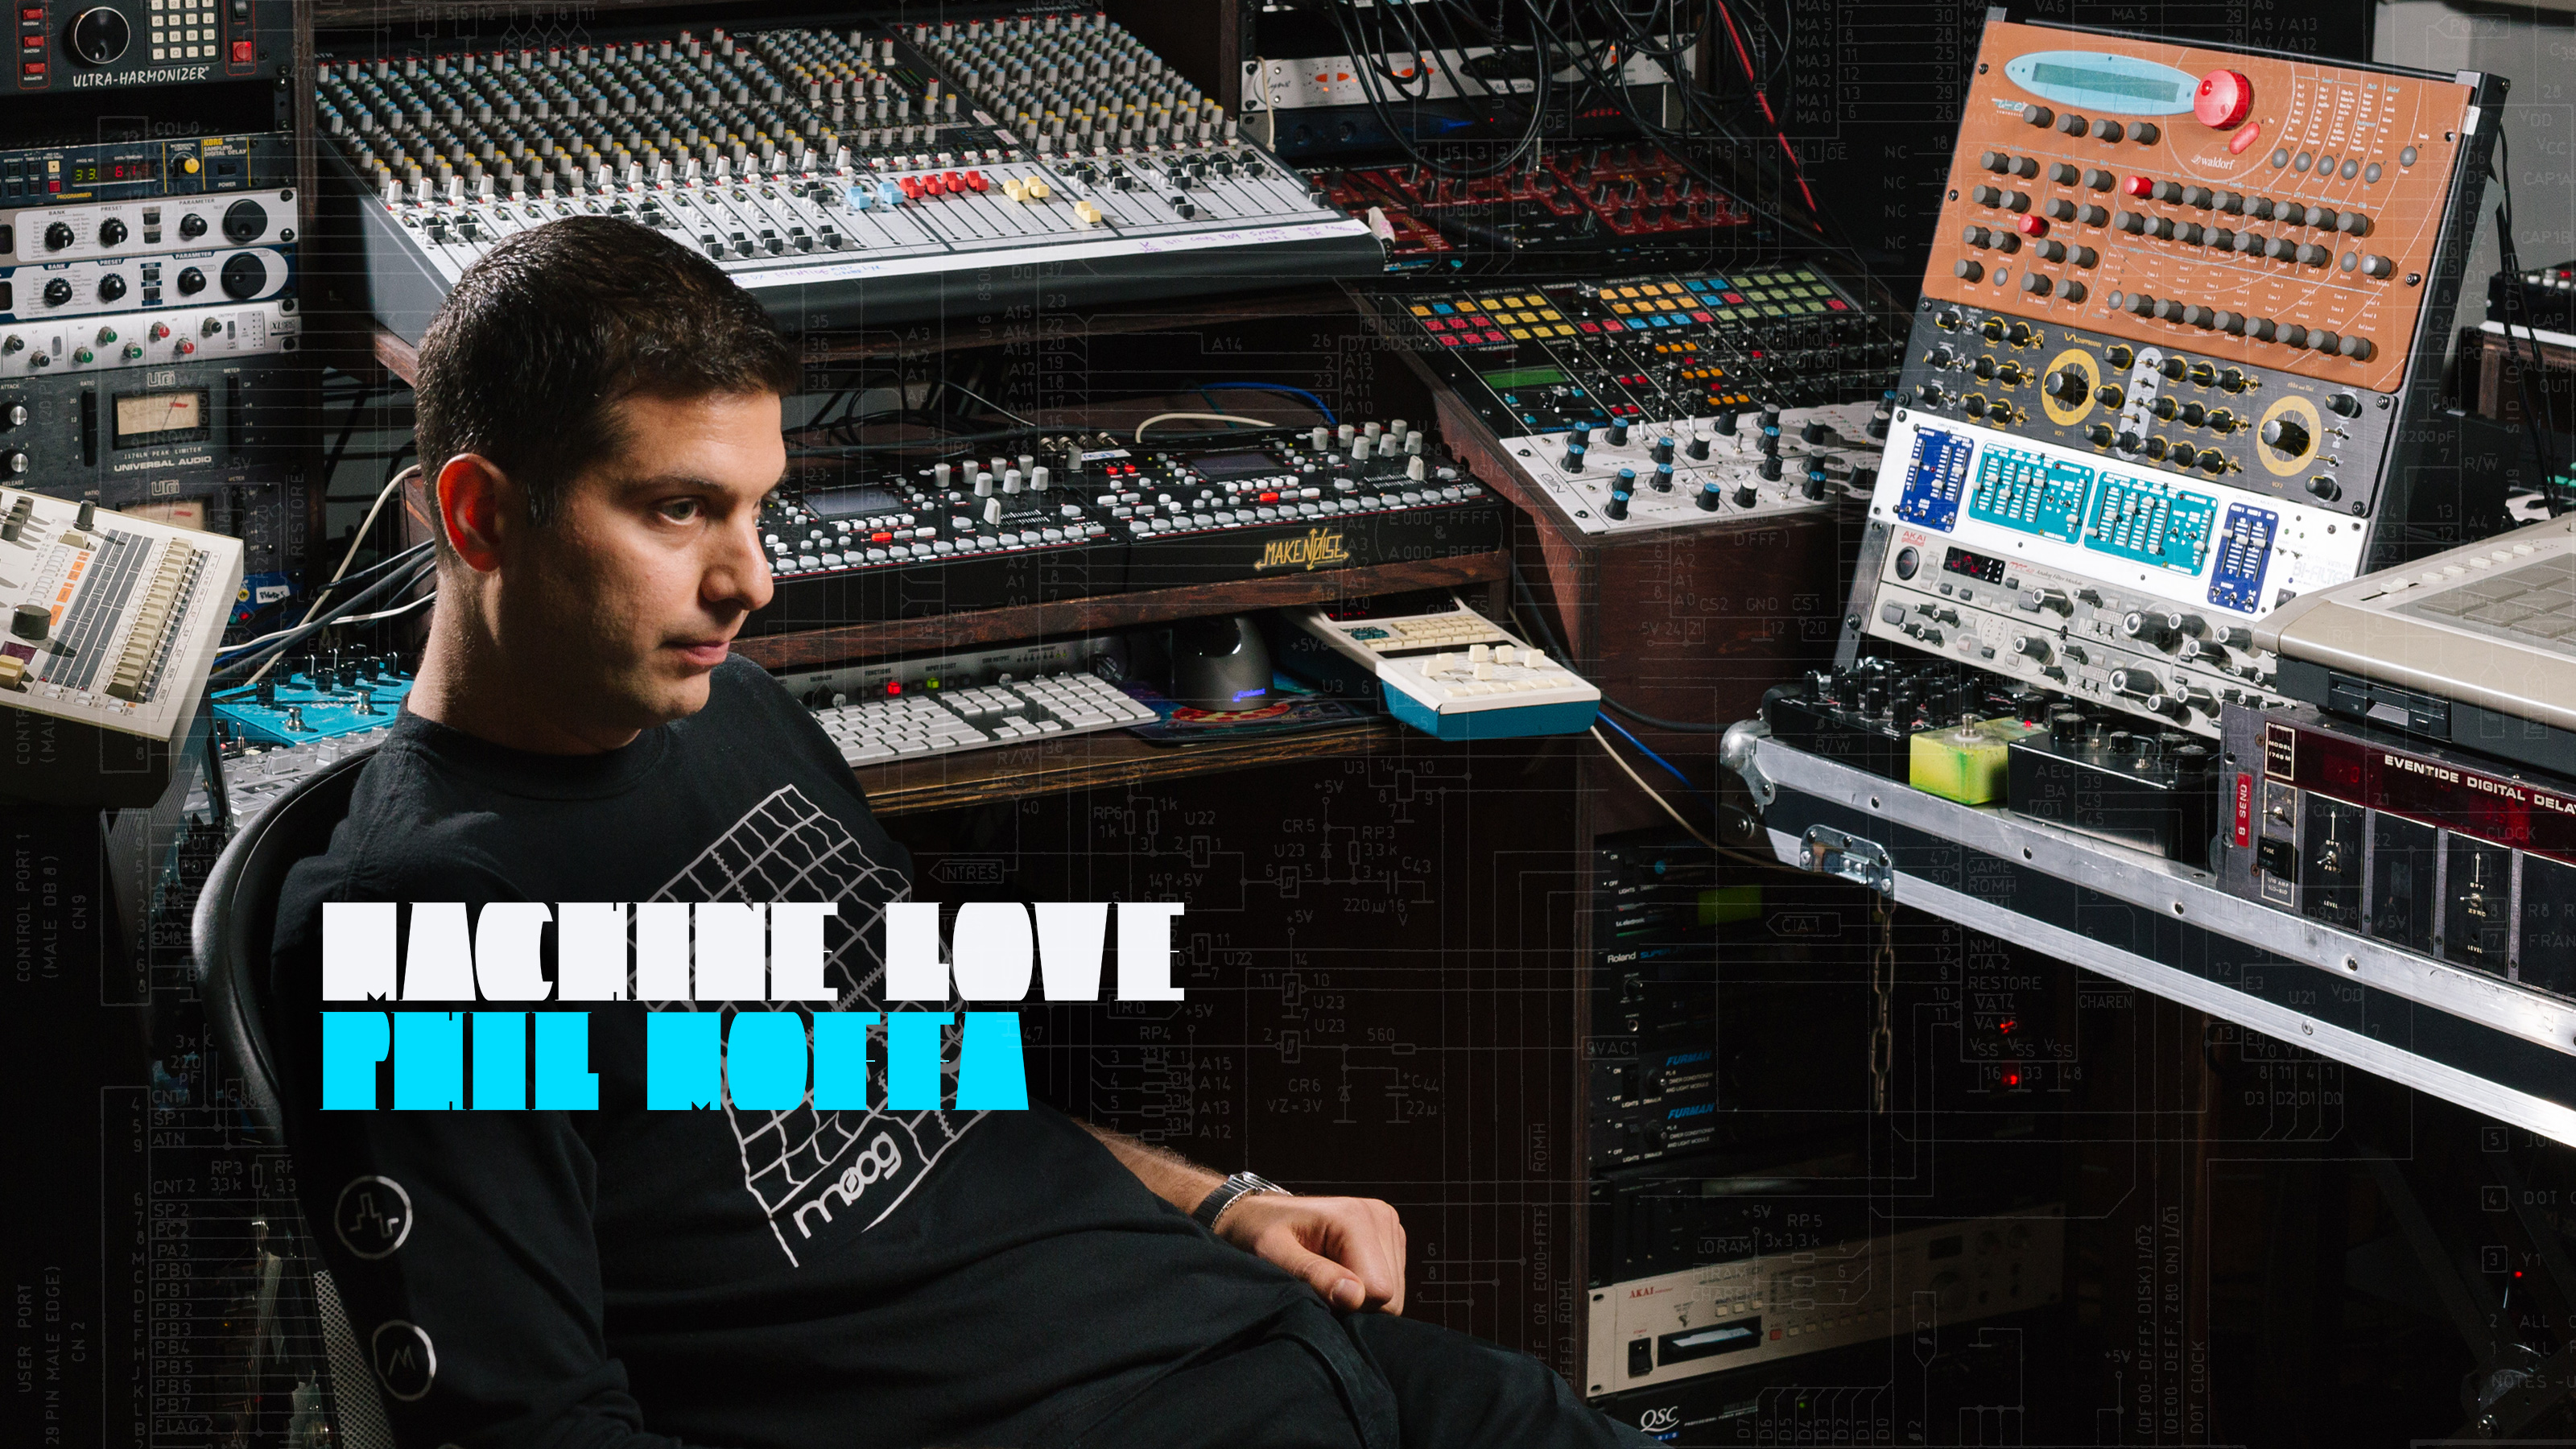 Machine Love: Phil Moffa